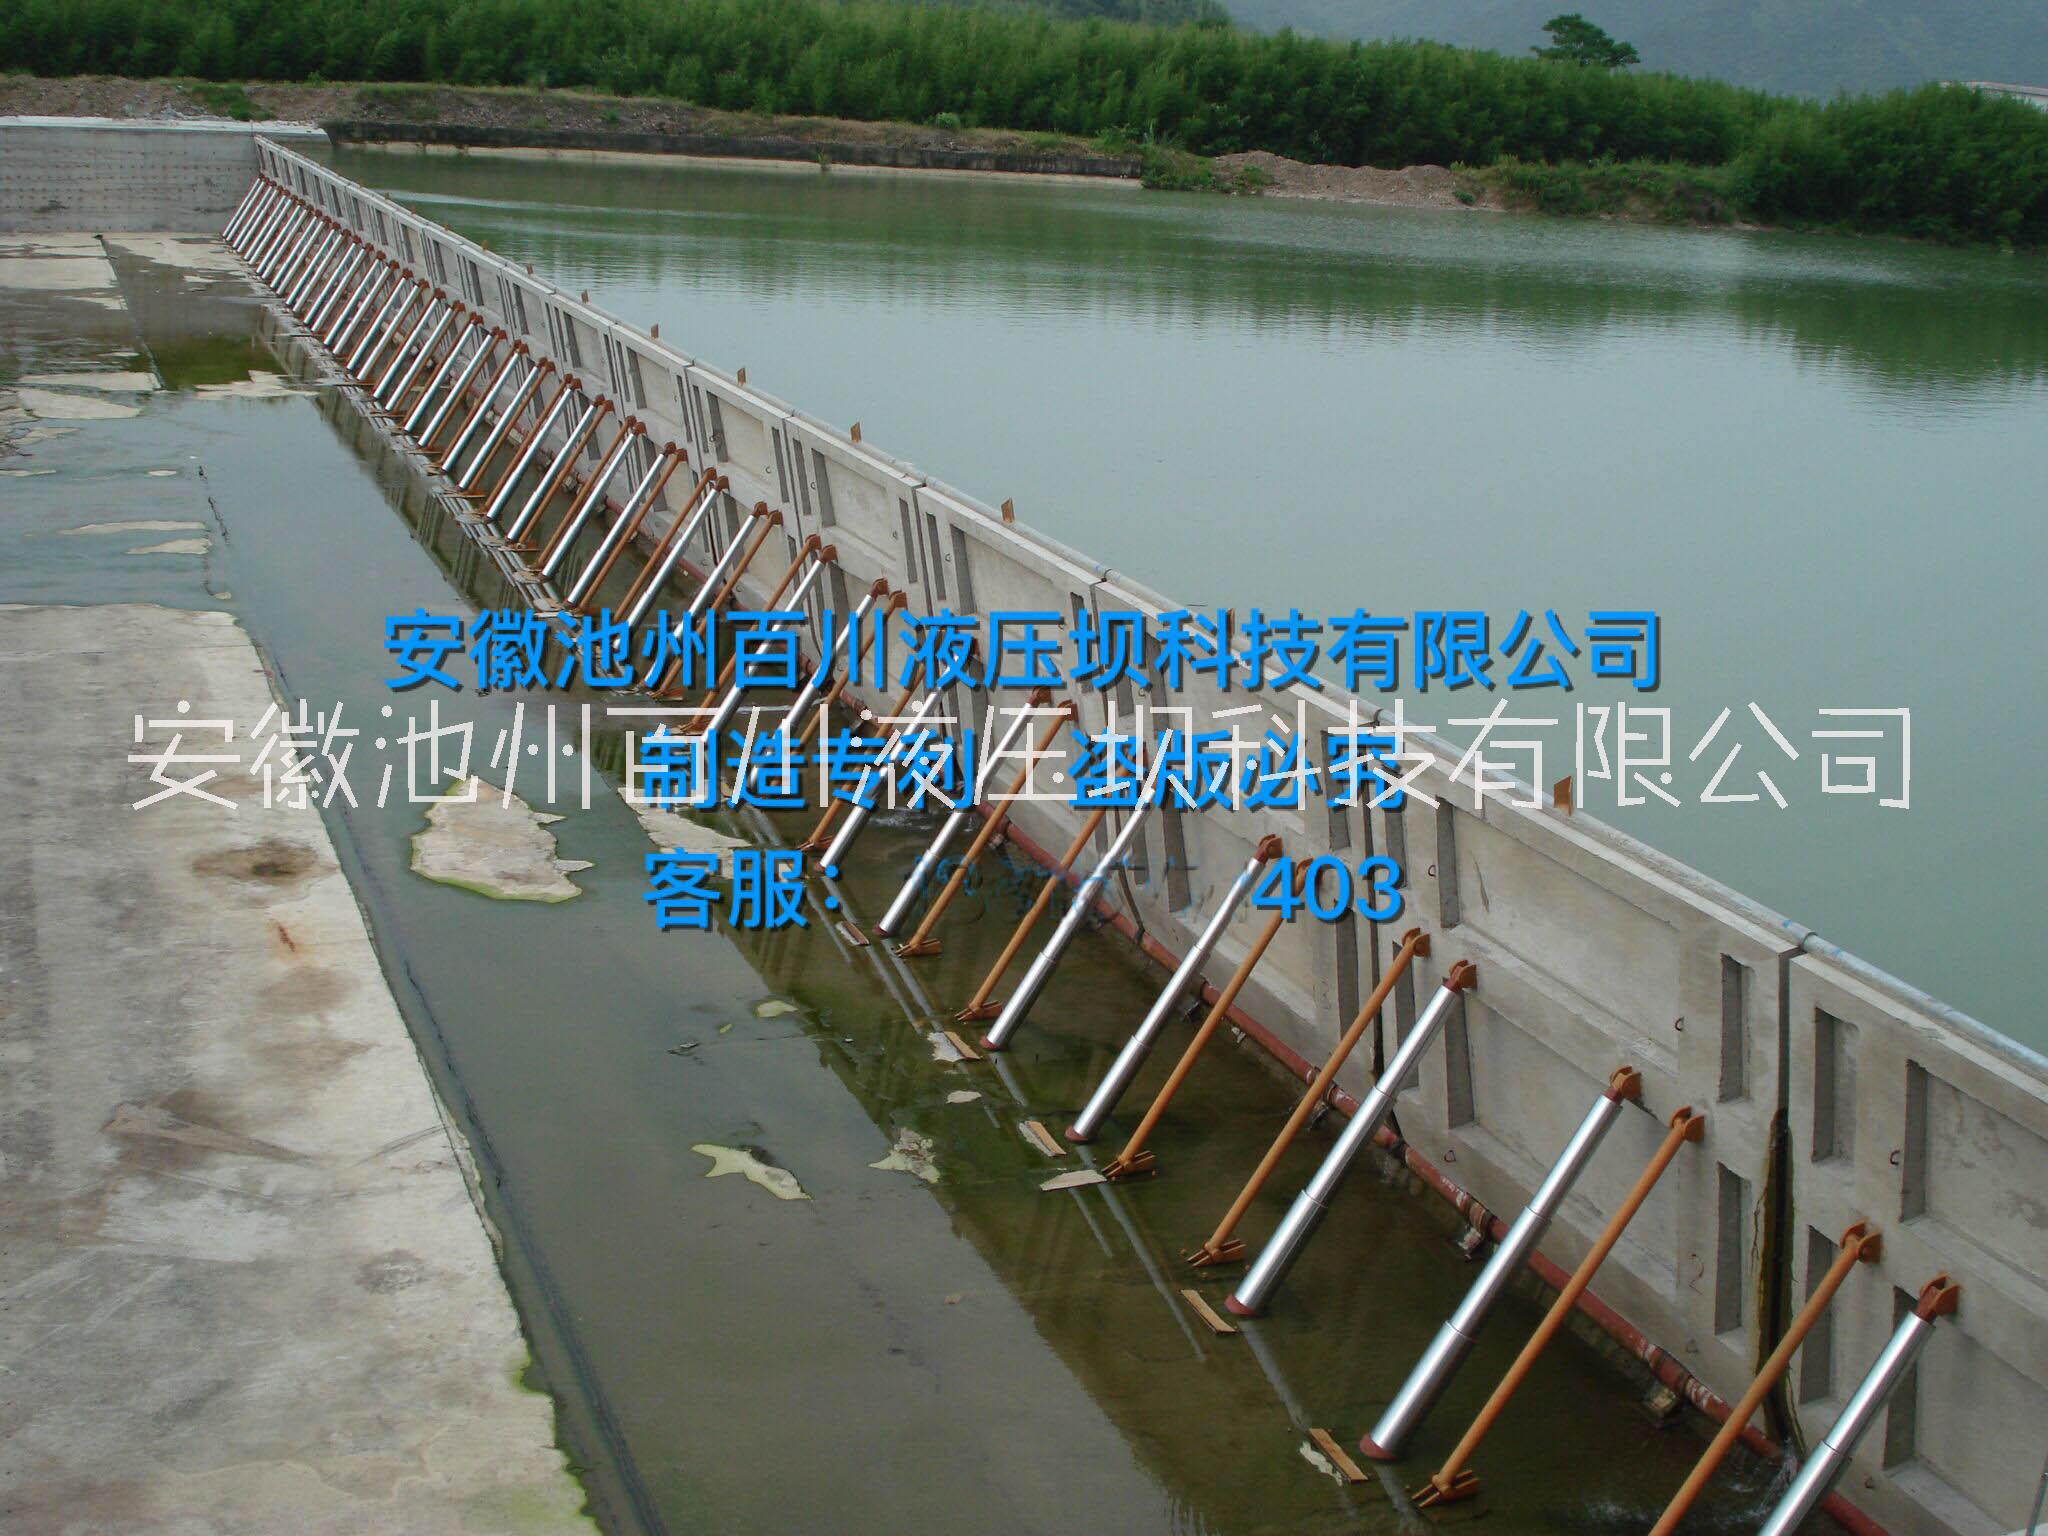 供应用于拦水、行洪的百川液压坝升降坝行业优势技术  淘汰传统活动坝